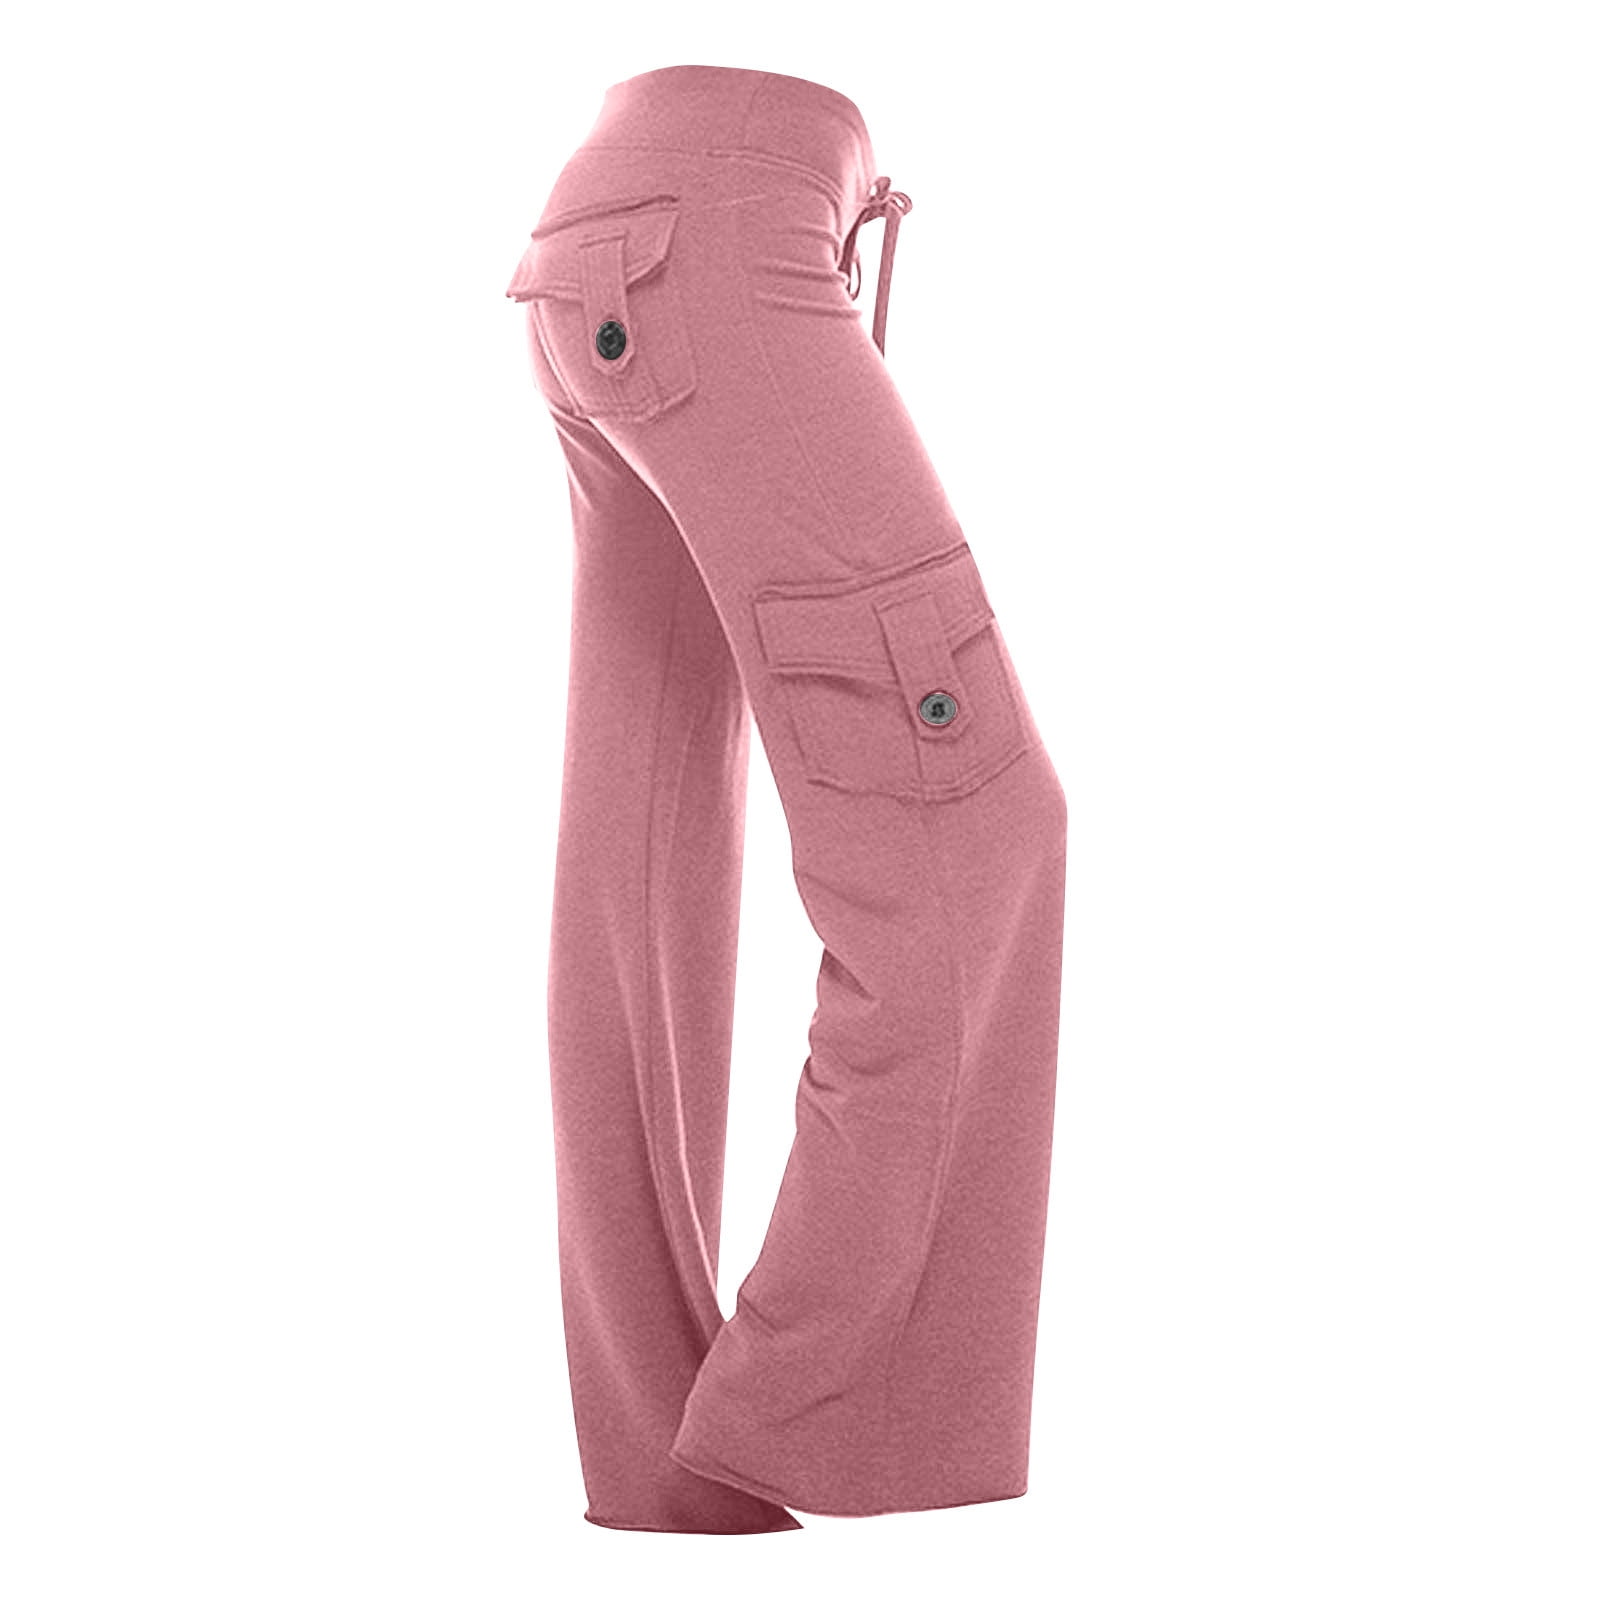 Bootcut Yoga Pants Pockets